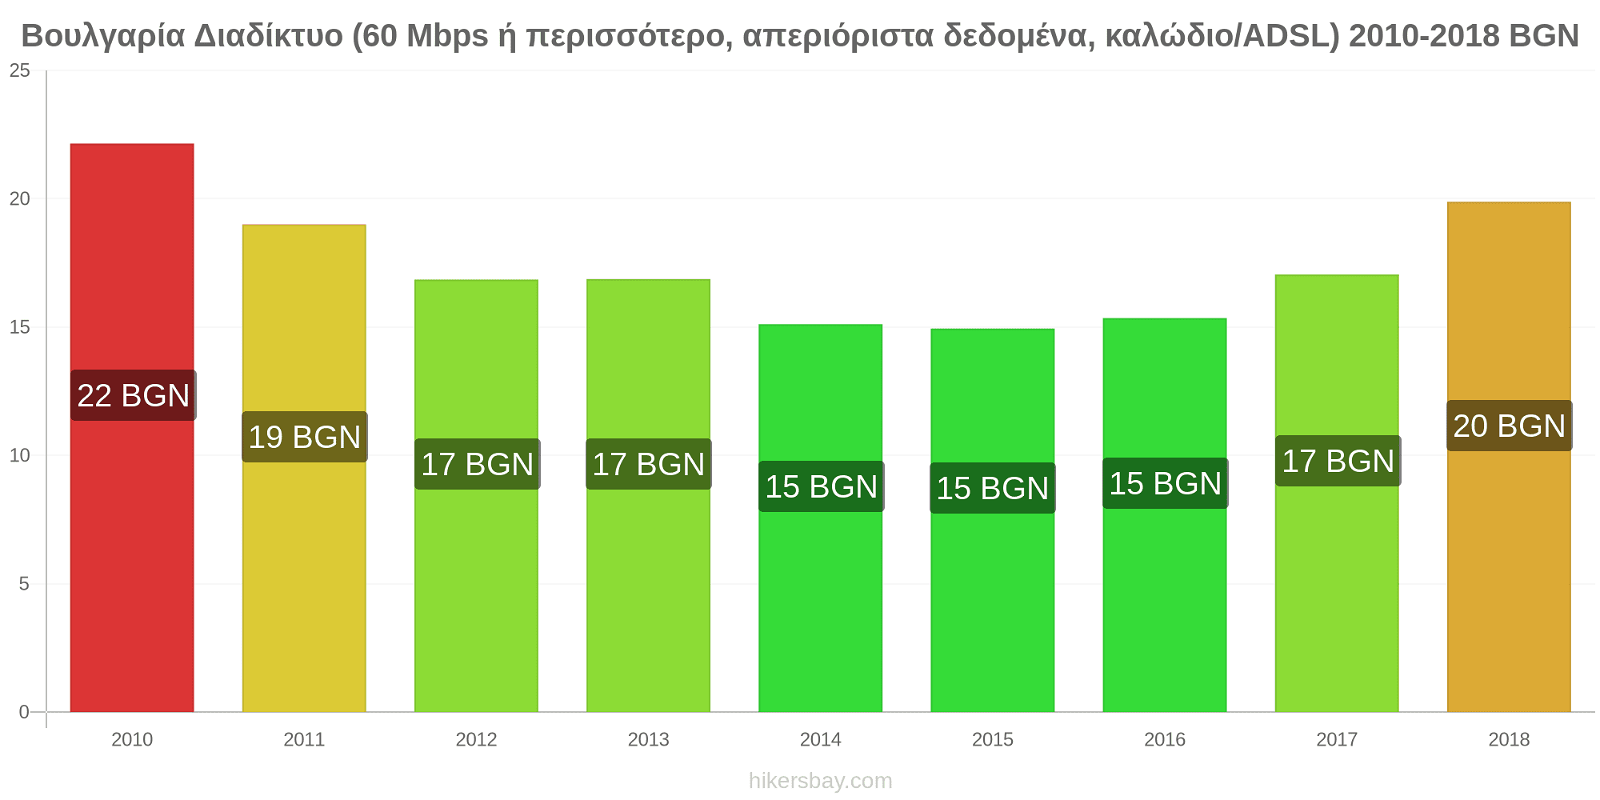 Βουλγαρία αλλαγές τιμών Διαδίκτυο (60 Mbps ή περισσότερο, απεριόριστα δεδομένα, καλώδιο/ADSL) hikersbay.com